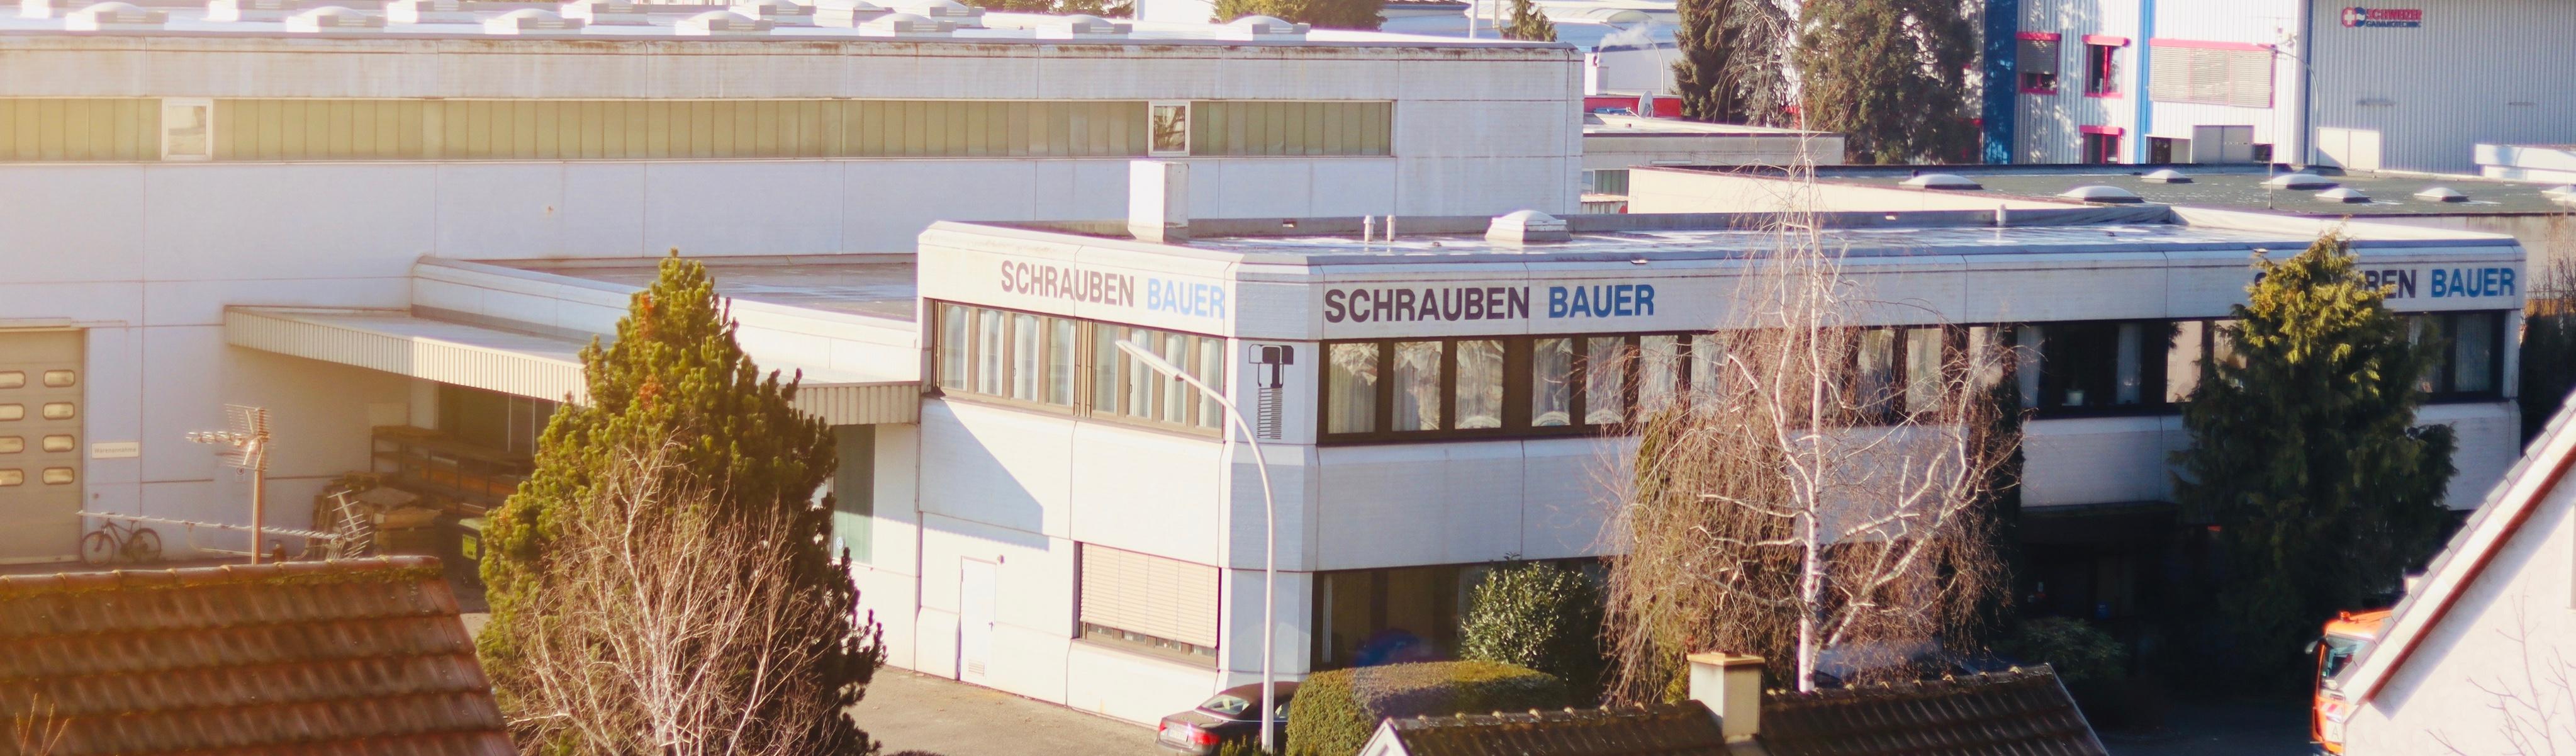 Bild 1 Schrauben Bauer GmbH in Heilbronn